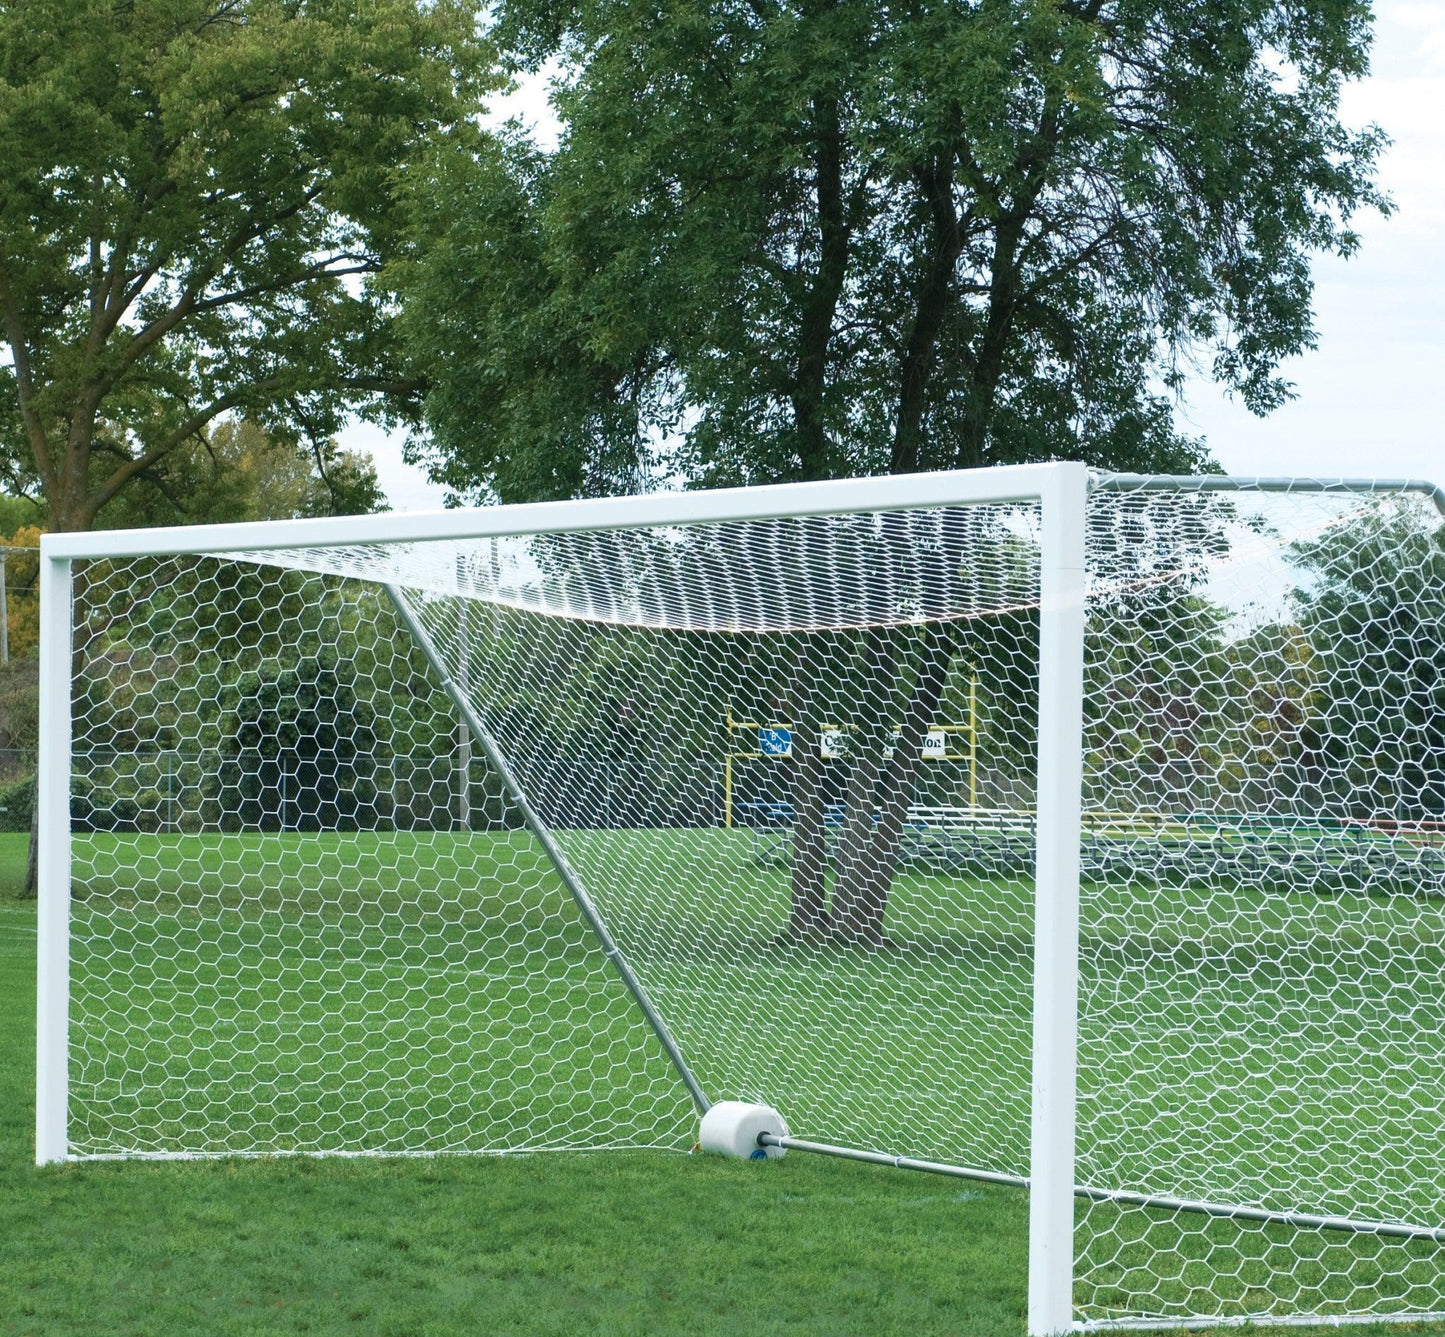 4" Round No-Tip Soccer Goal Packages - bisoninc